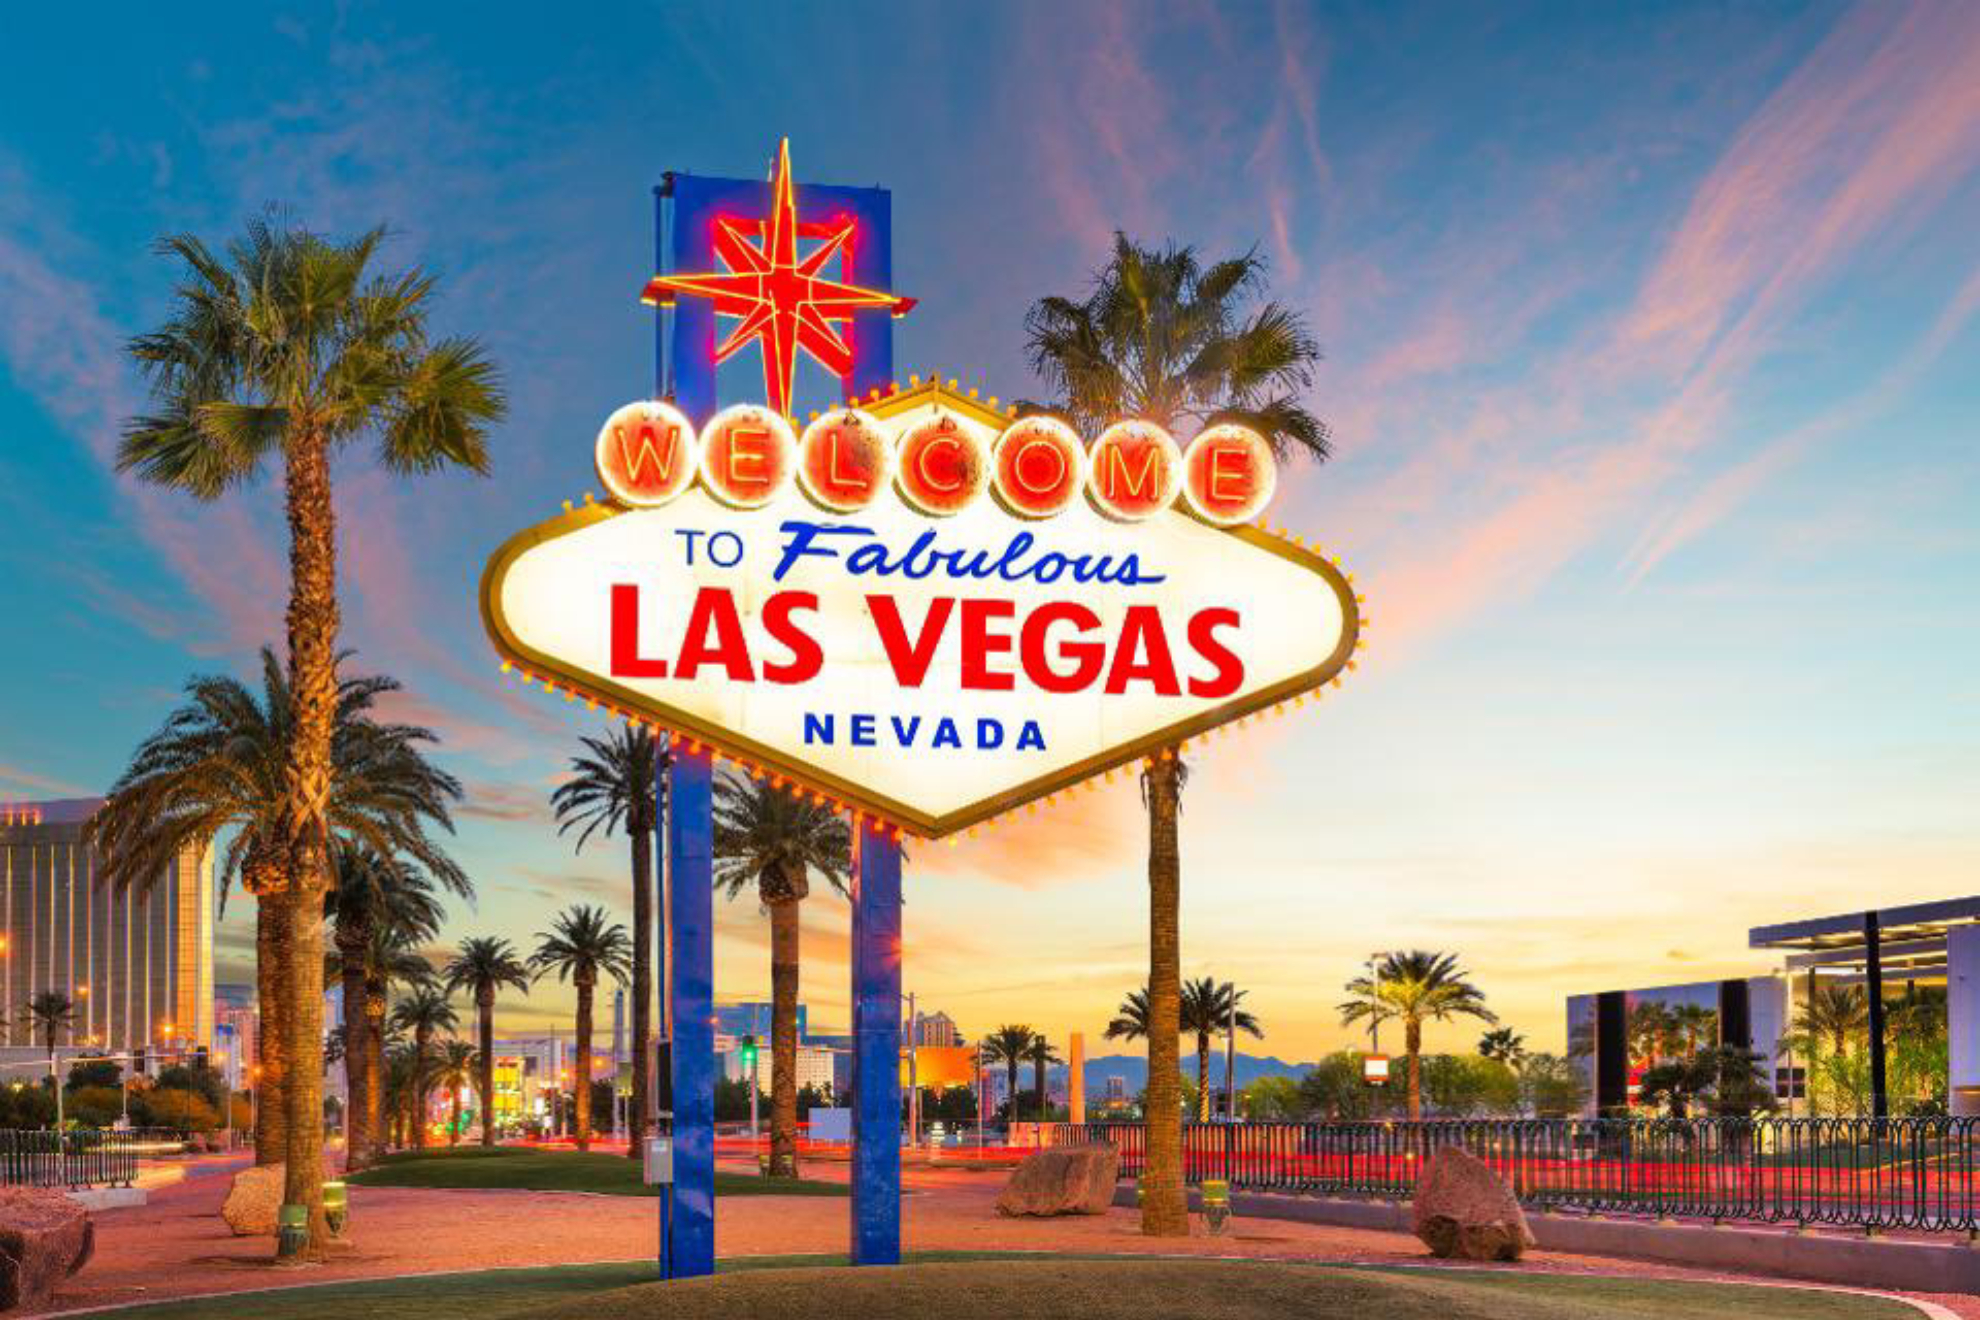 La ciudad de Las Vegas se ha convertido en s un espectculo deportivo para sus visitantes